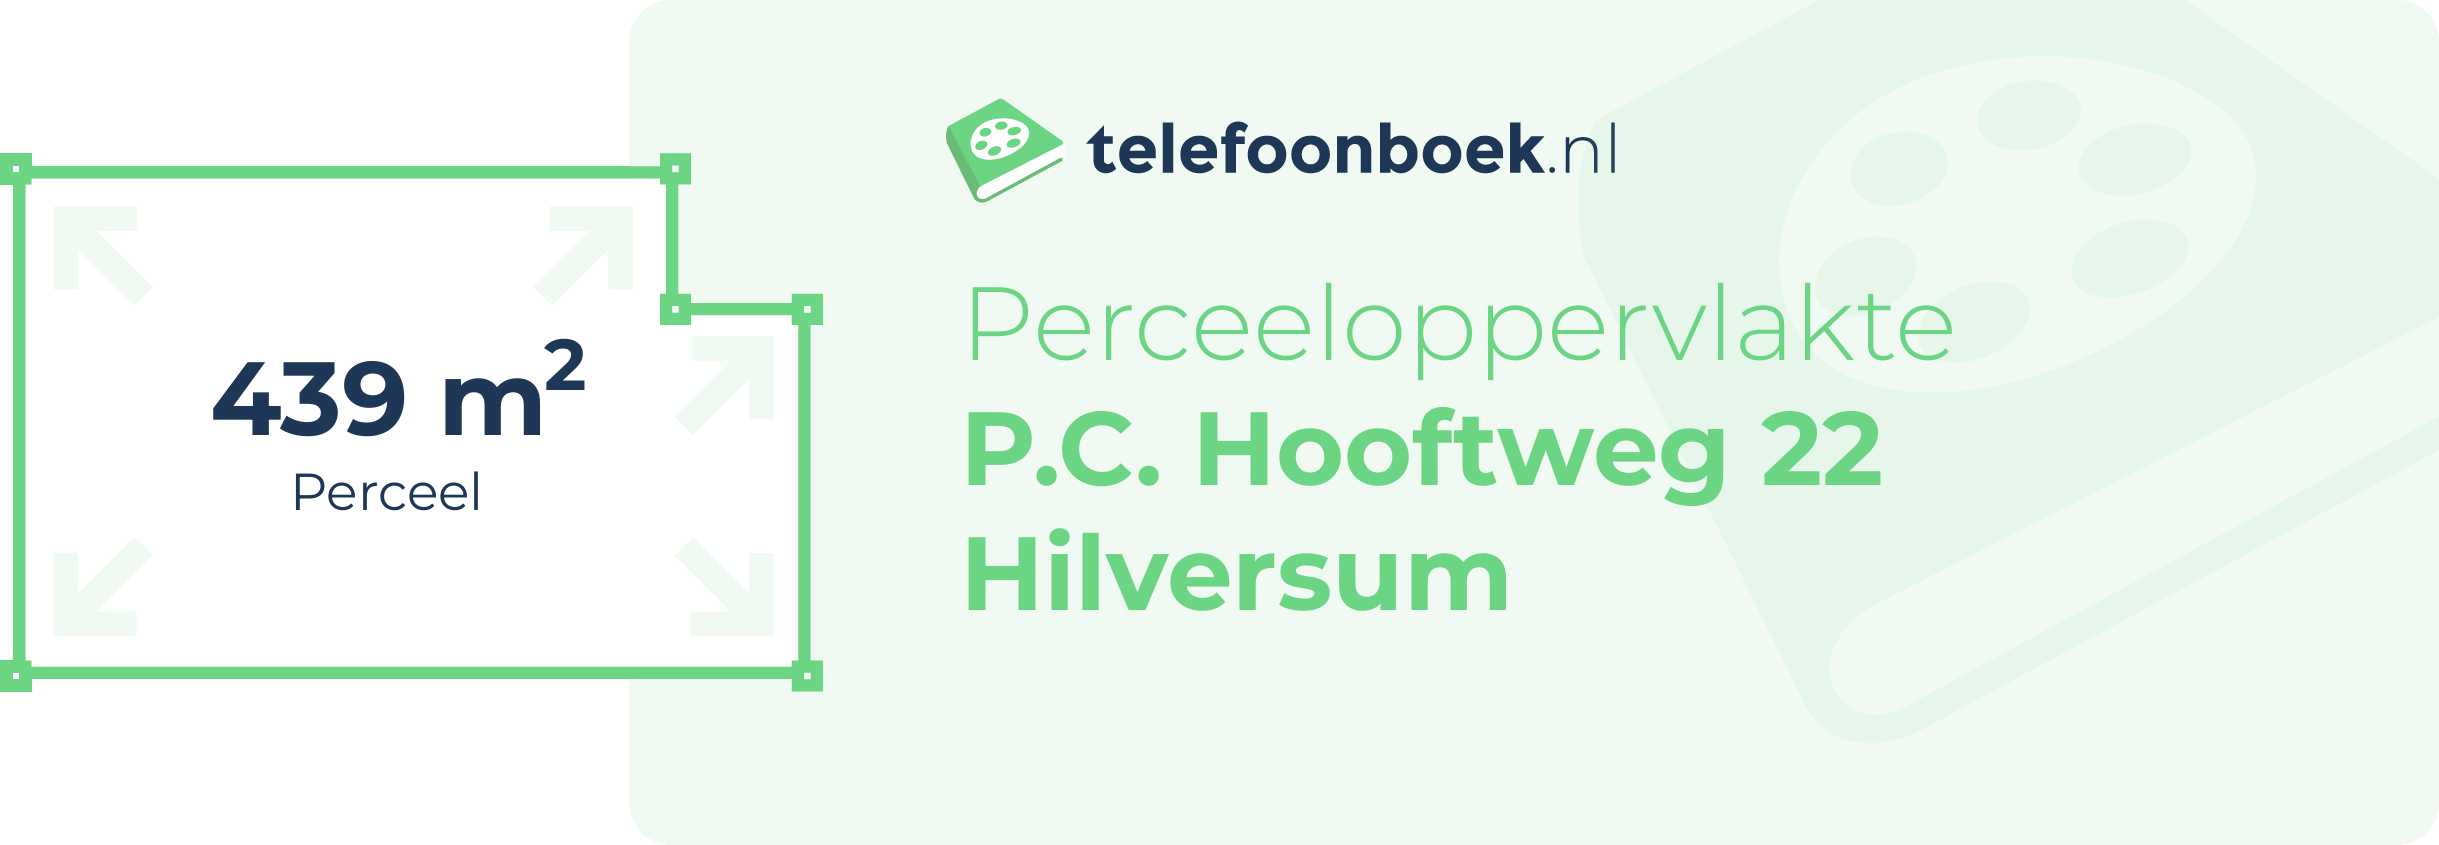 Perceeloppervlakte P.C. Hooftweg 22 Hilversum